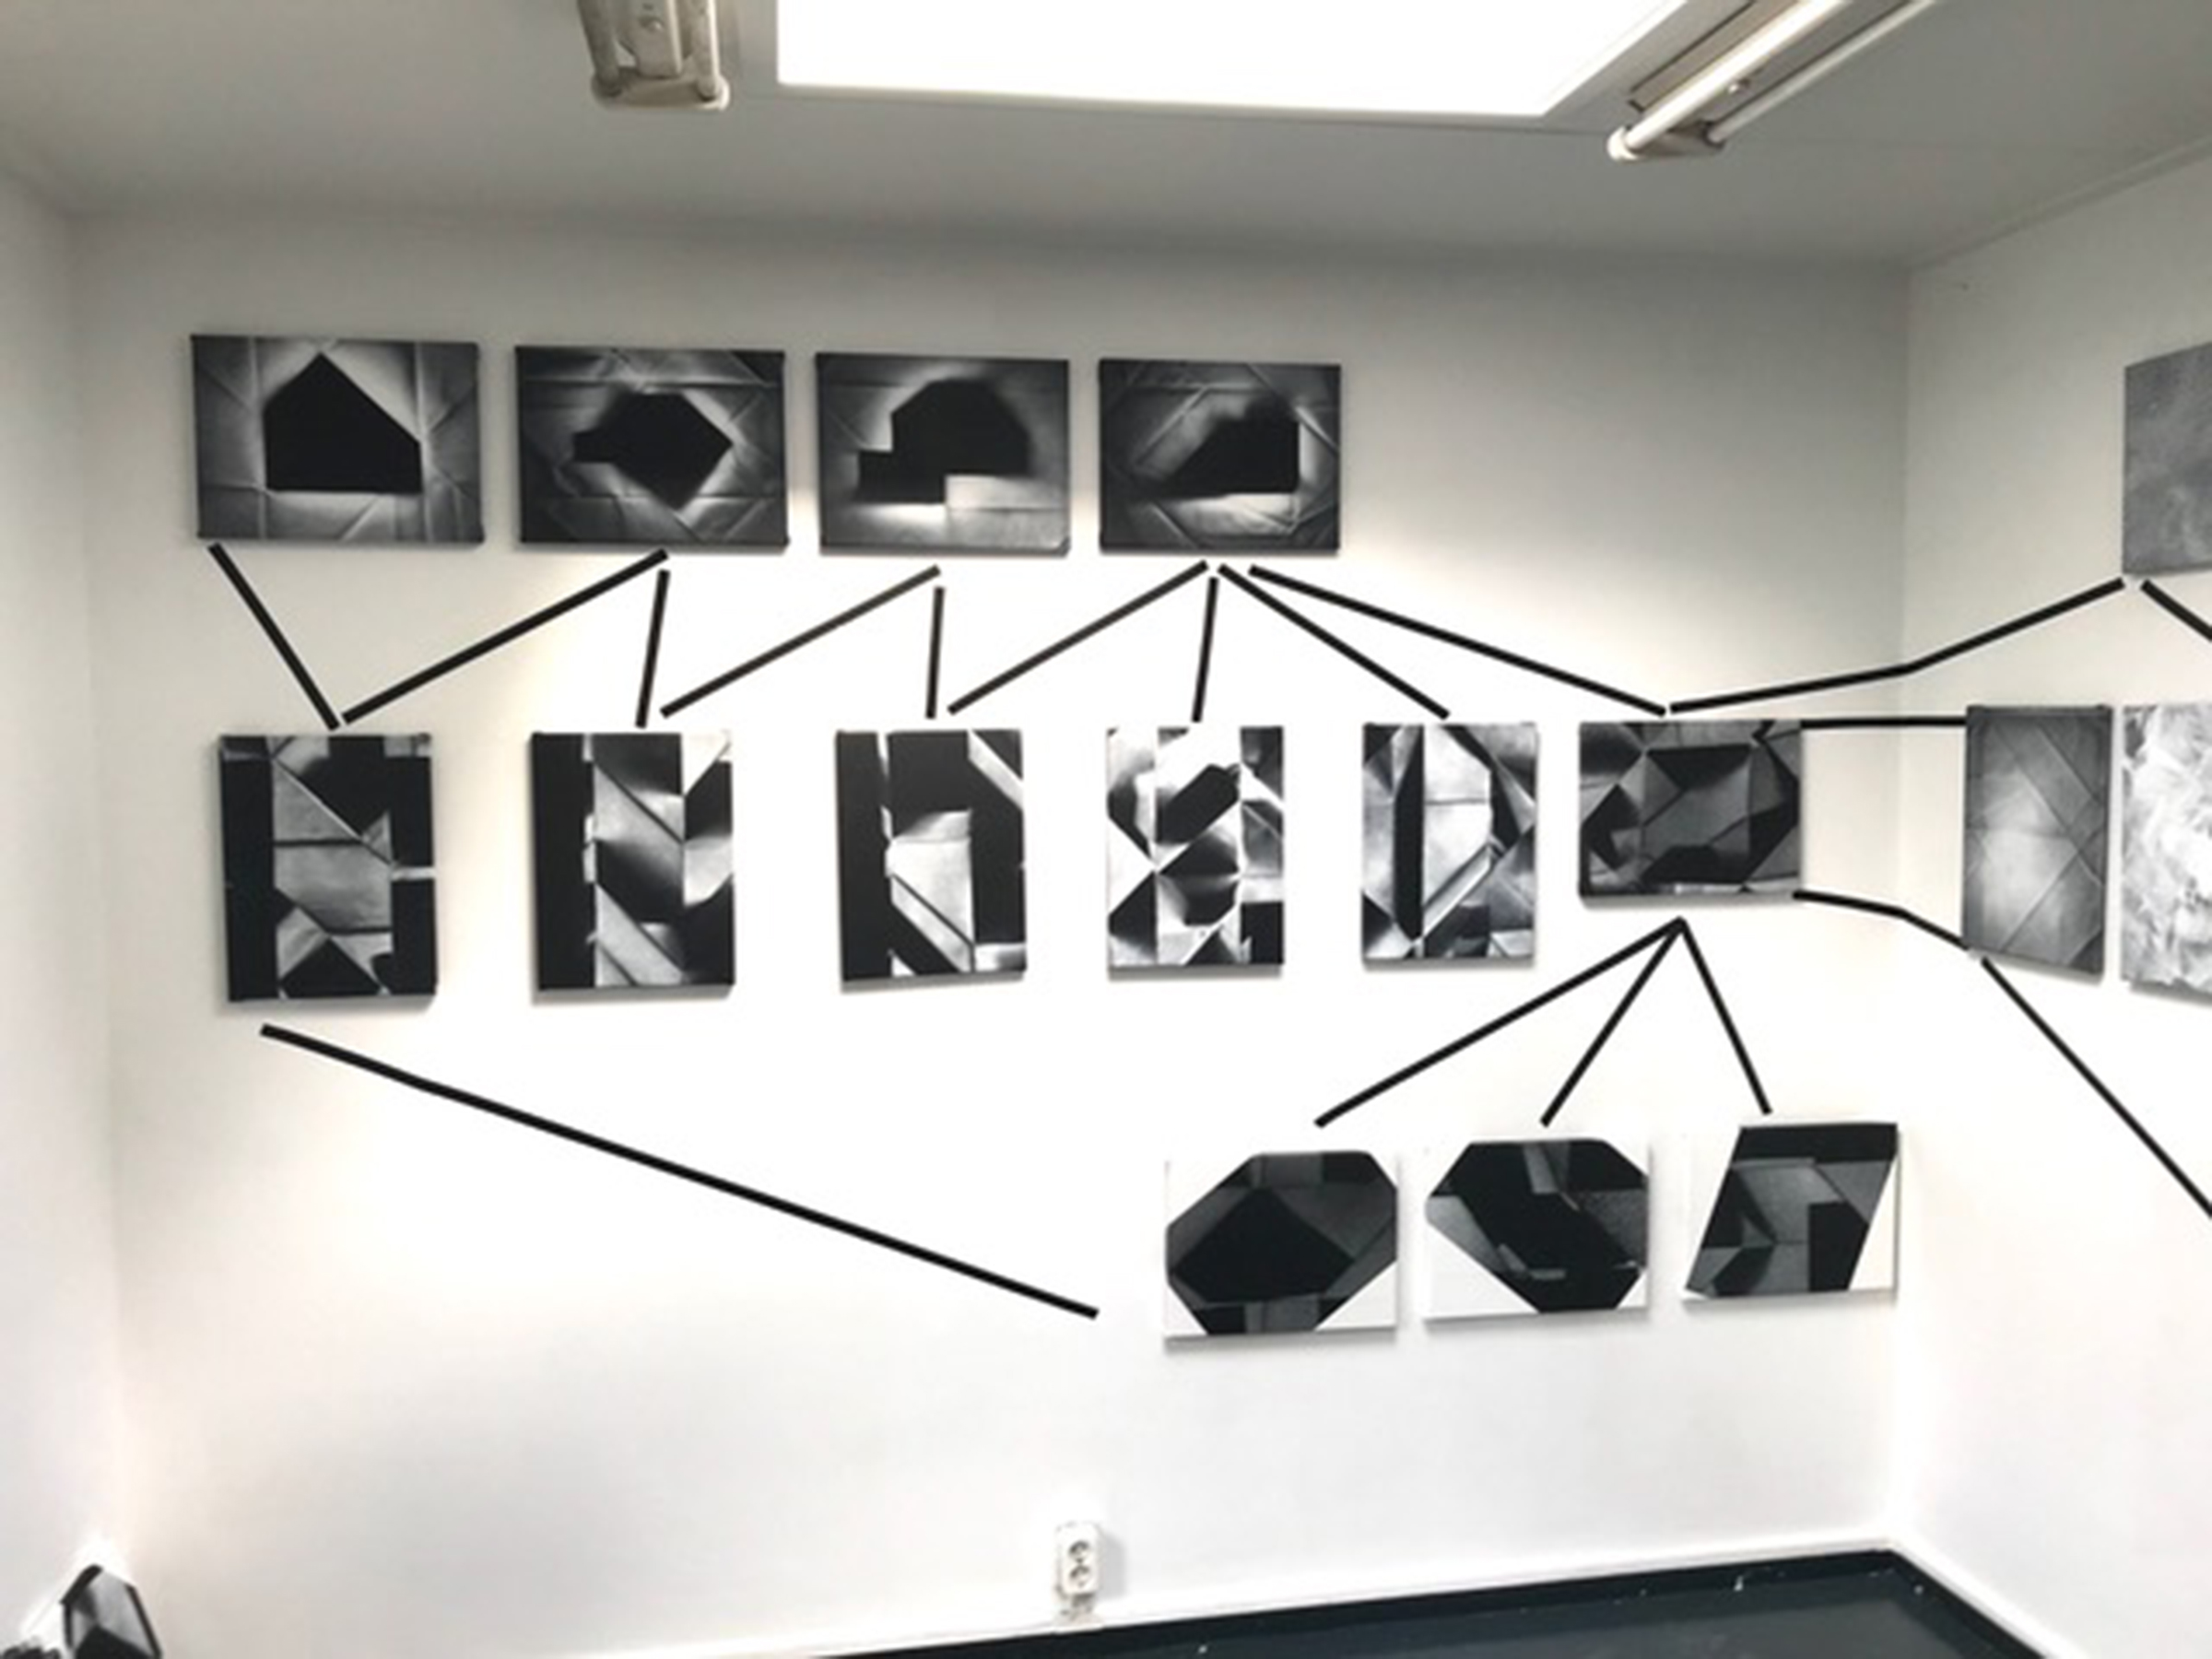 zestien schilderijen hangen vlakbij elkaar aan de muur en zijn verbonden door zwarte lijnen van tape